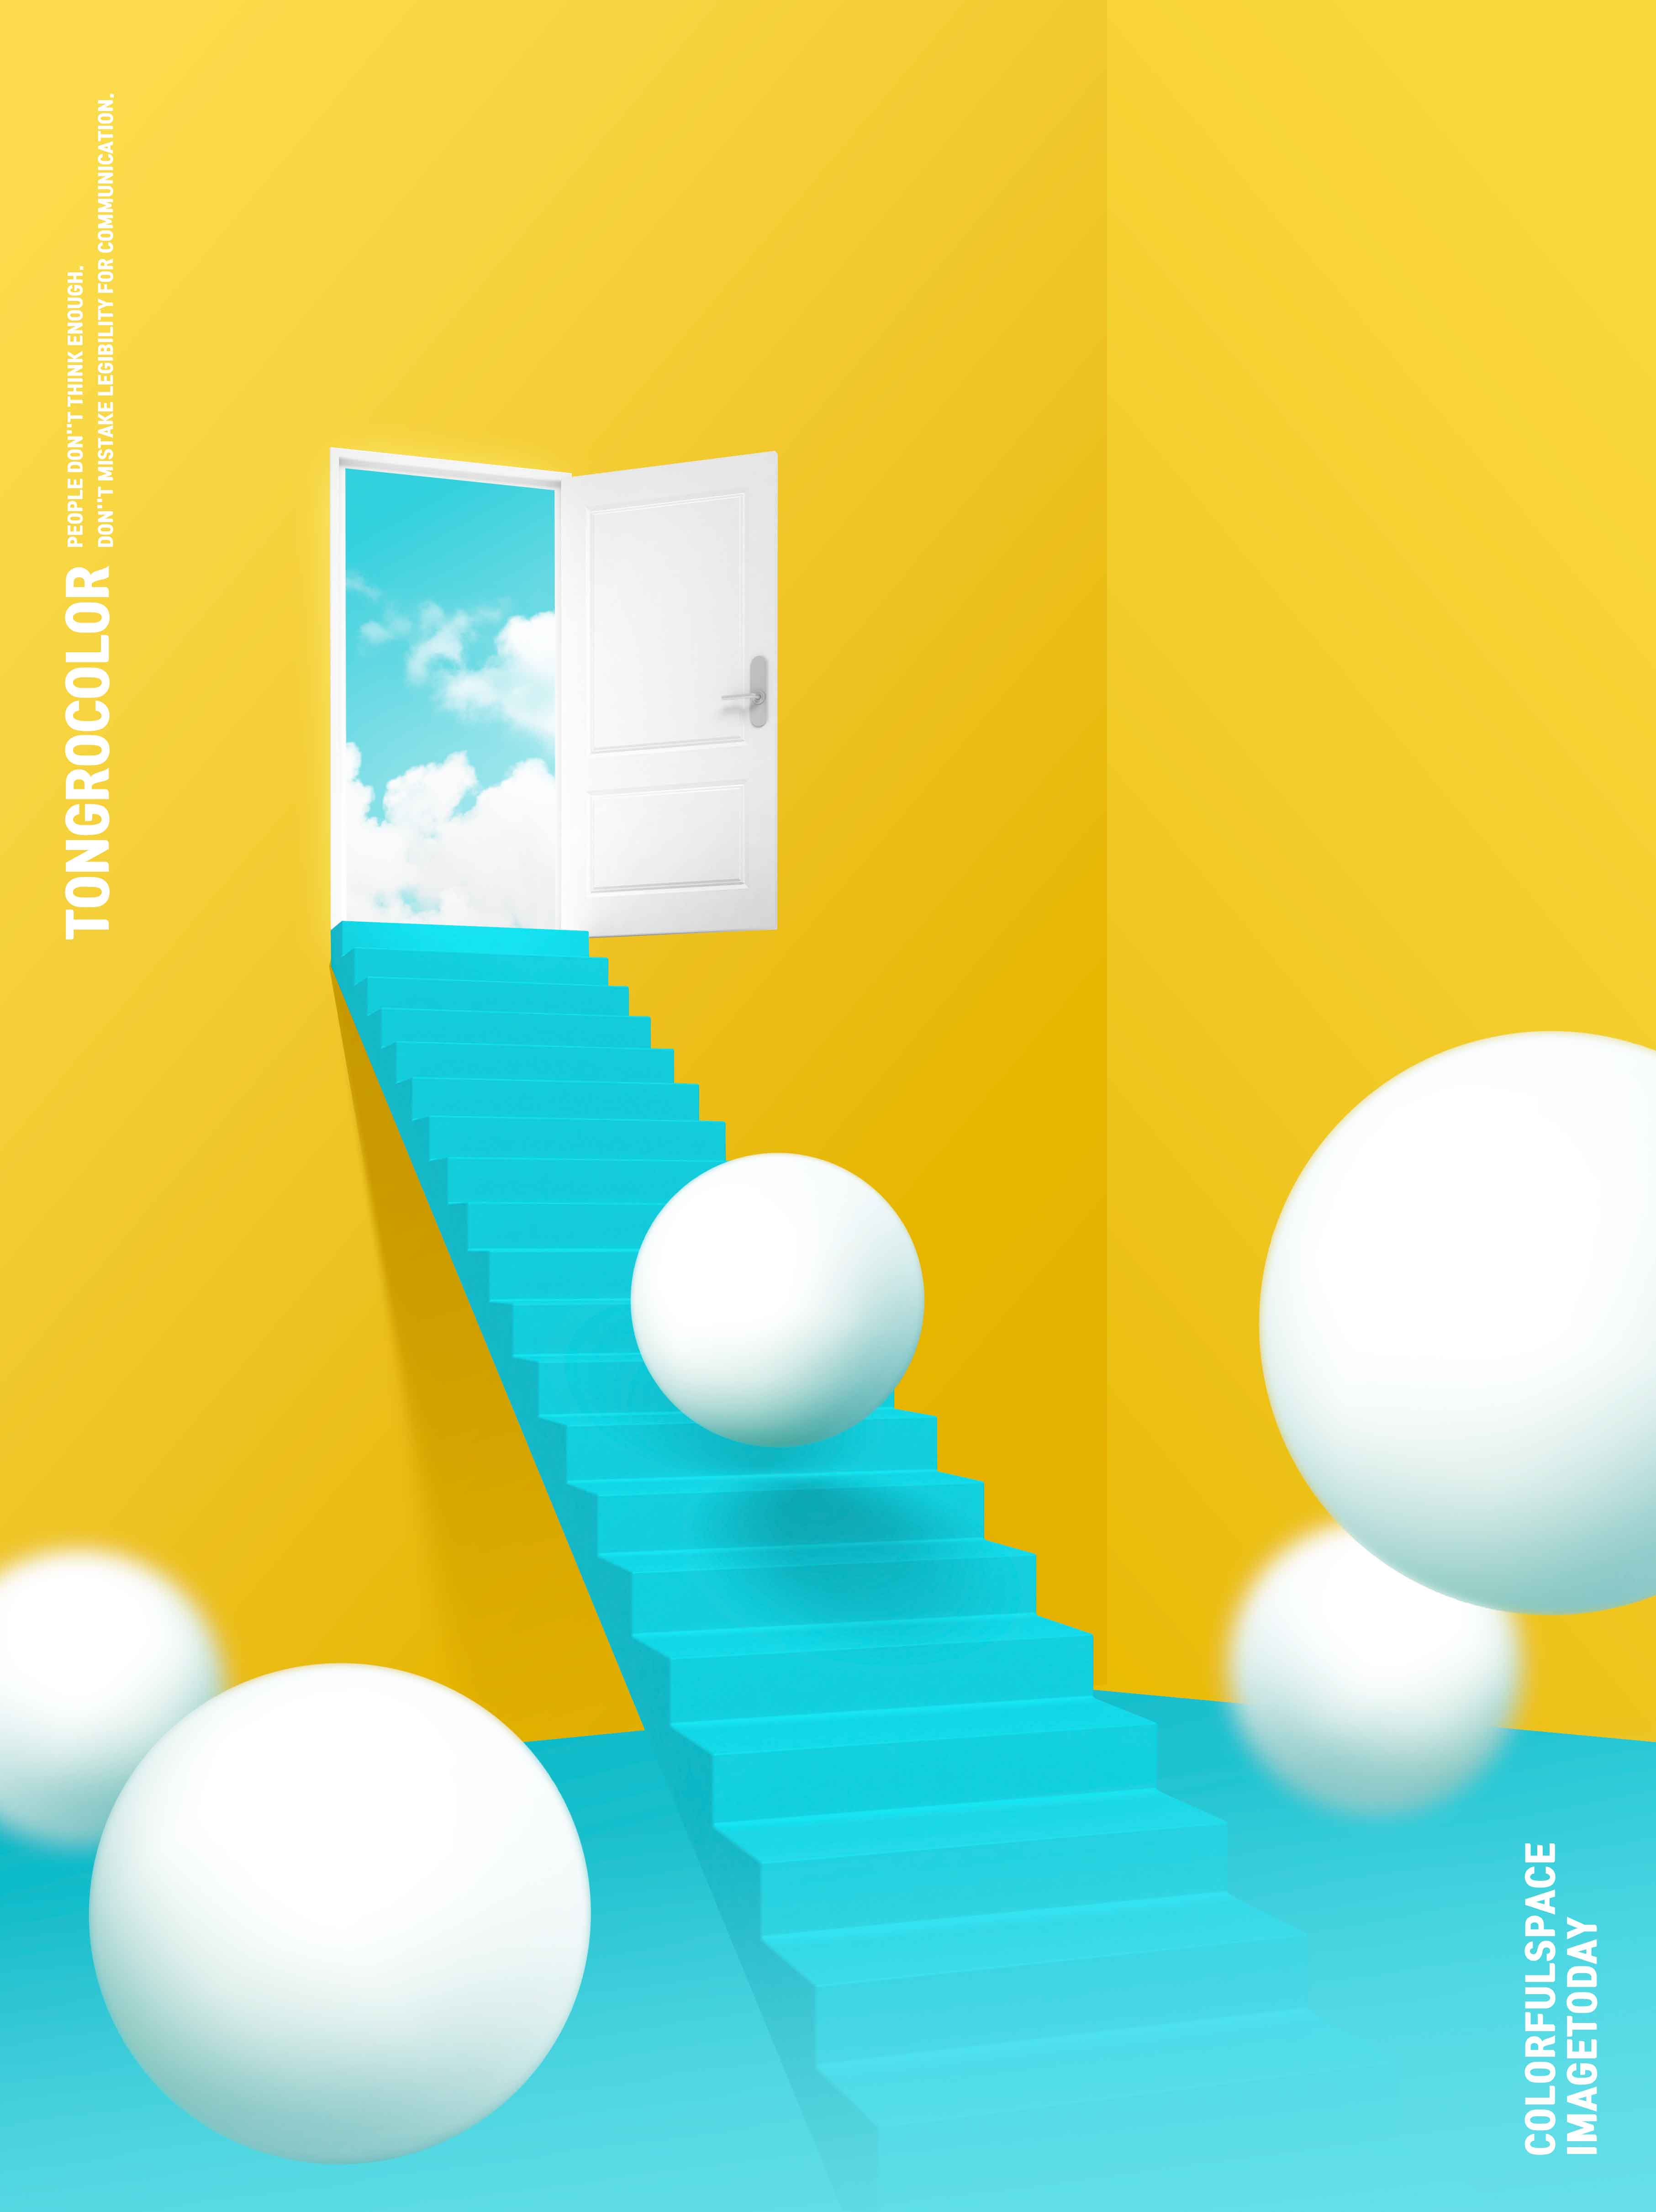 天堂阶梯抽象梦幻空间海报PSD素材第一素材精选psd素材插图